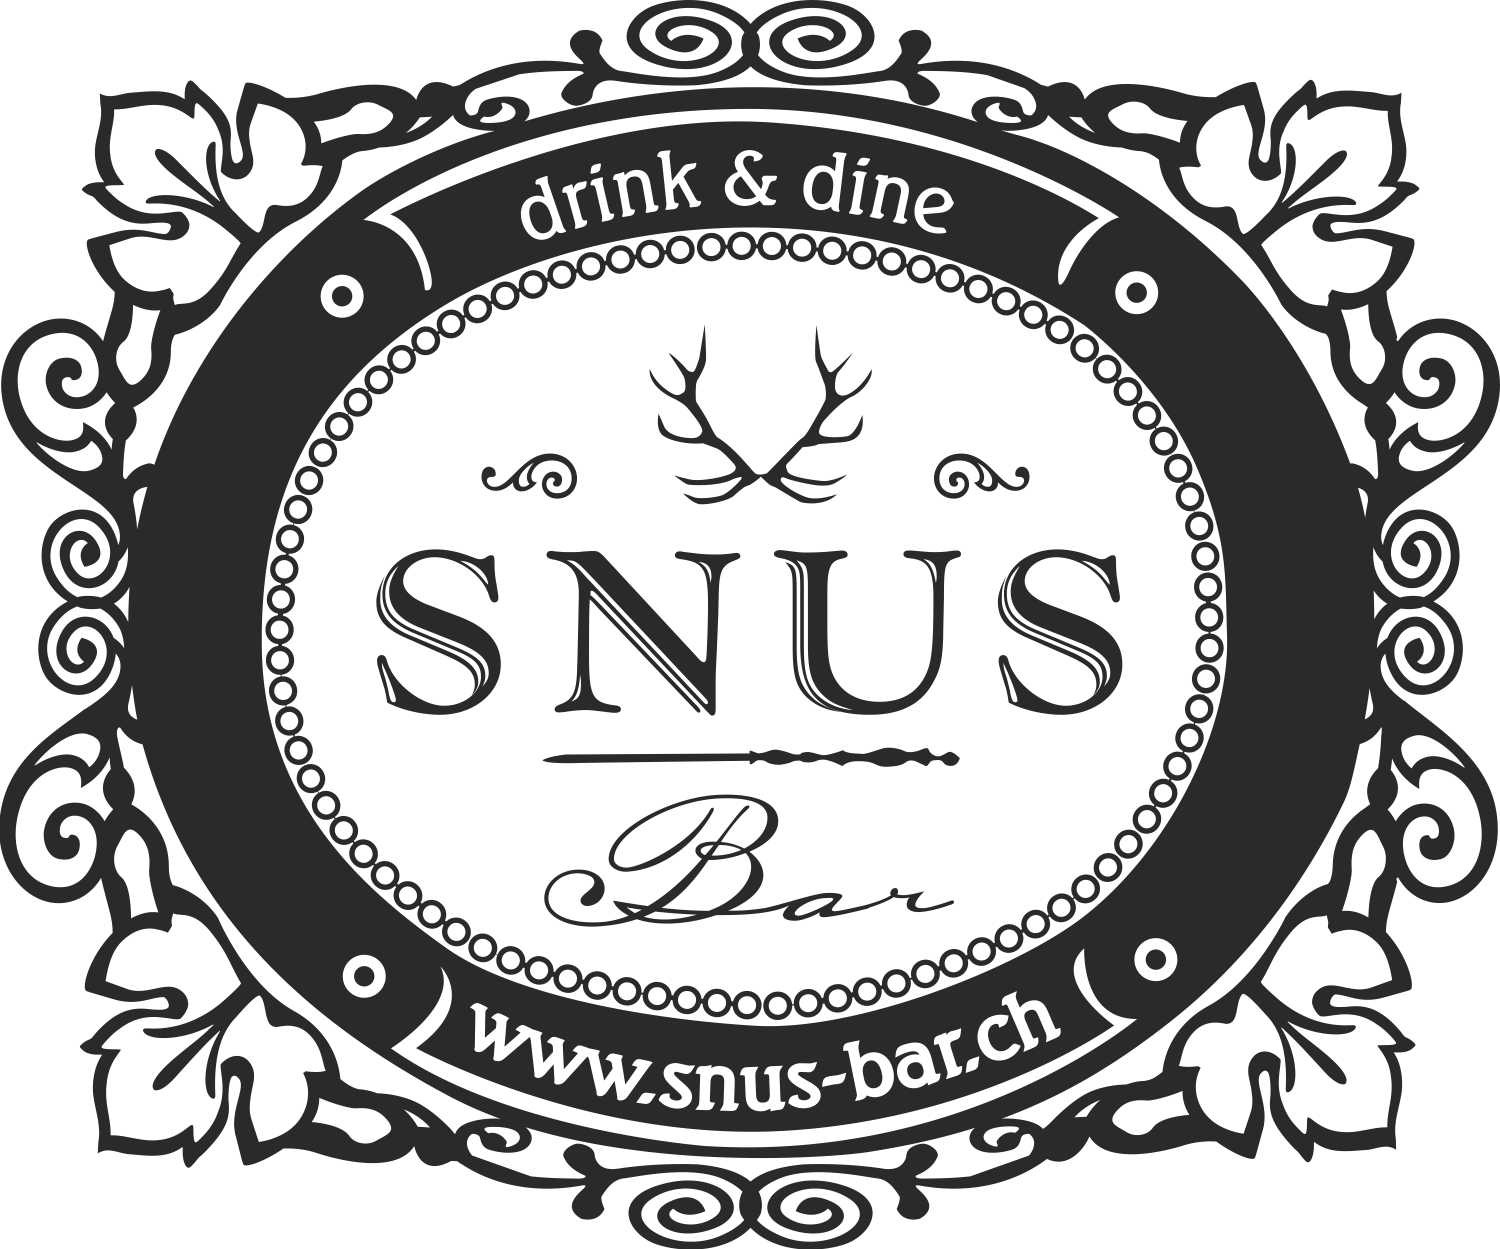 (c) Snus-bar.com